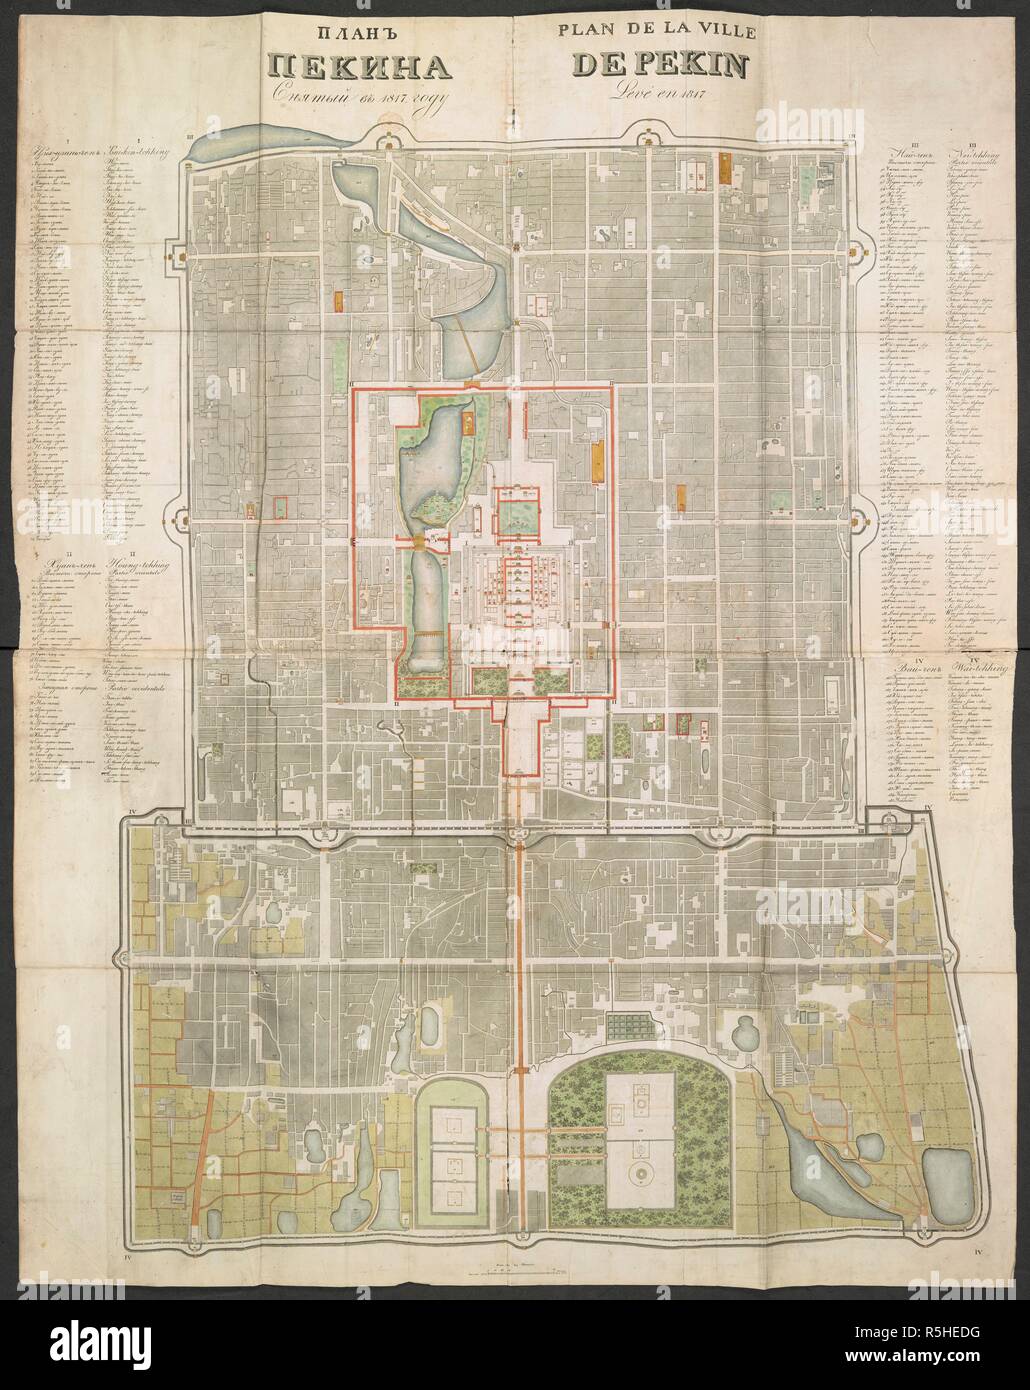 Plan de la Ville de Pekin. Karte/Plan von Peking. Atlas. Rollen. 1829. Quelle:40162. g 16. Sprache: Französisch/Russisch. Stockfoto